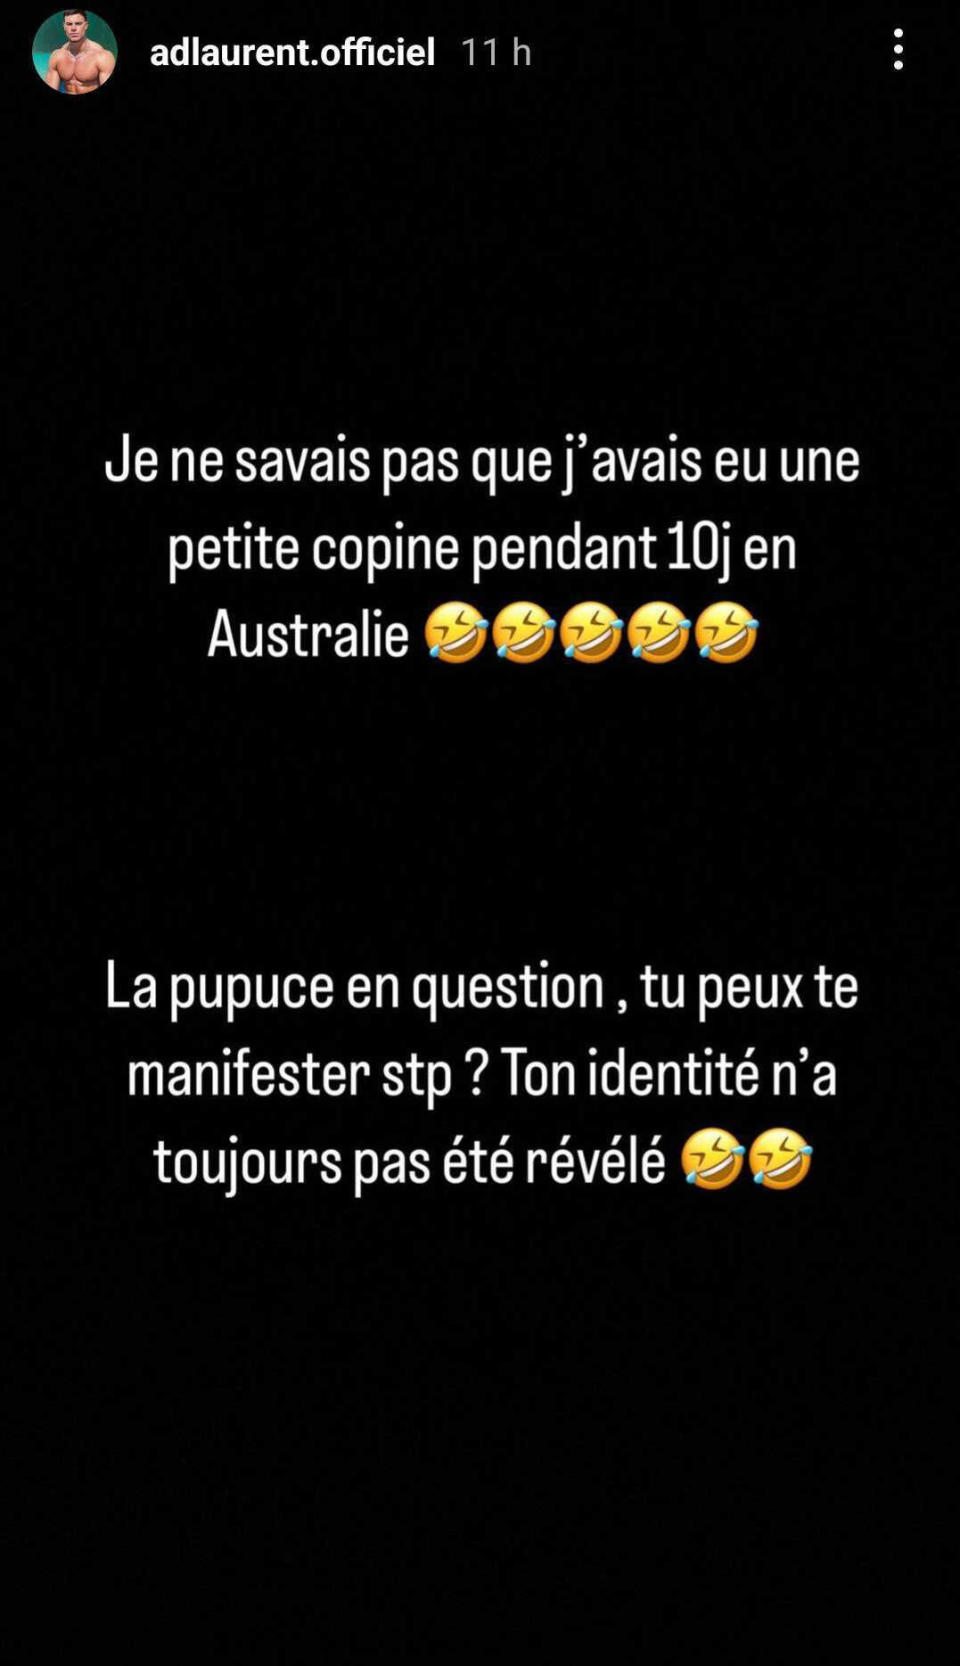 Adrien Laurent réagit à la plainte contre lui sur Instagram.